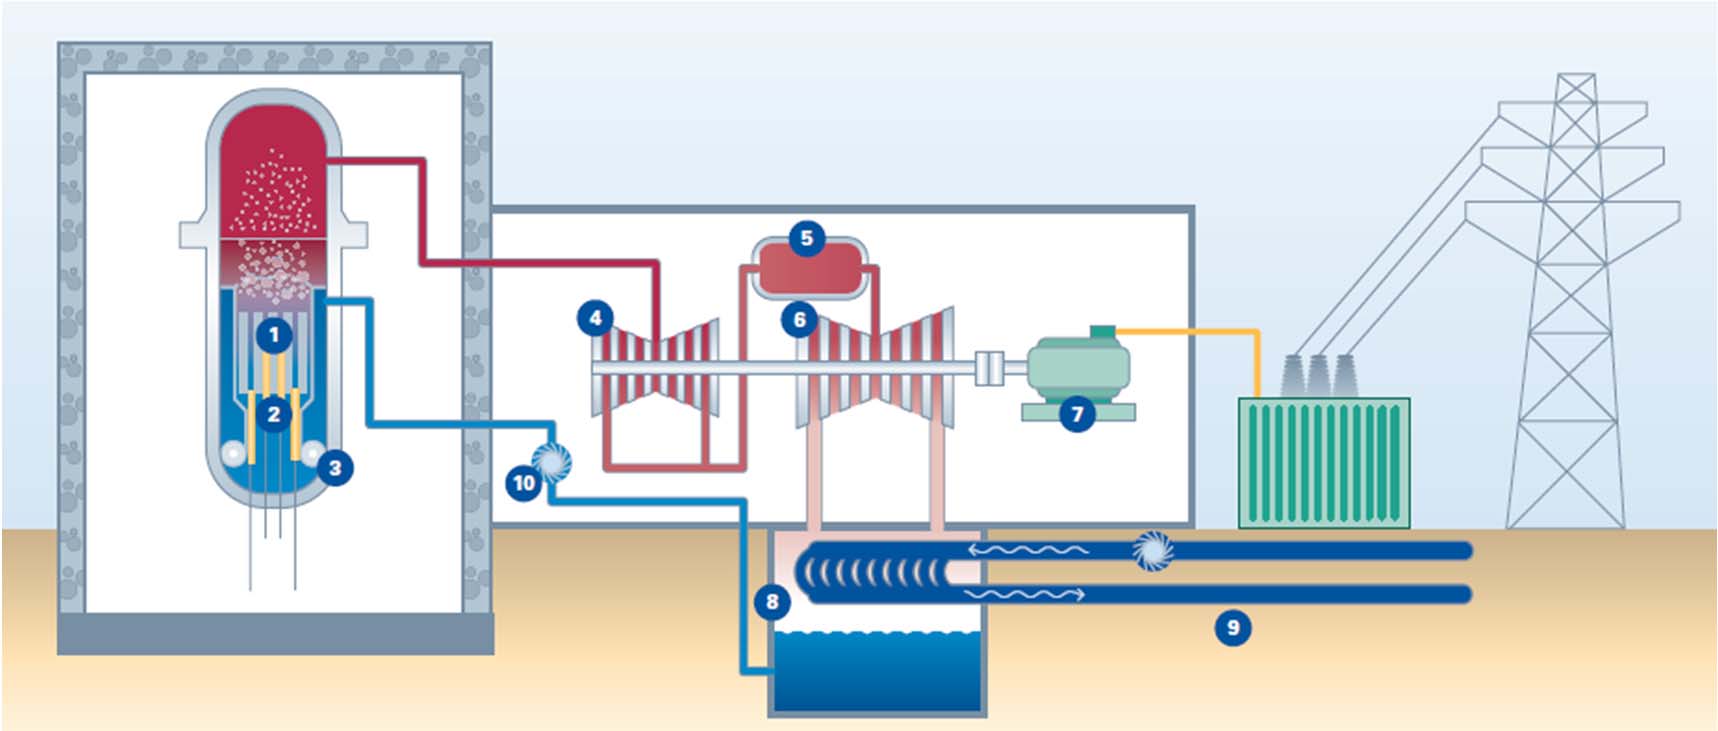 Elektrárna Olkiluoto - princip varného reaktoru k varu dochází při průchodu vody v prostoru mezi palivovými tyčemi (1) výkon reaktoru je regulován pomocí regulačních tyčí (2) a recirkulačních